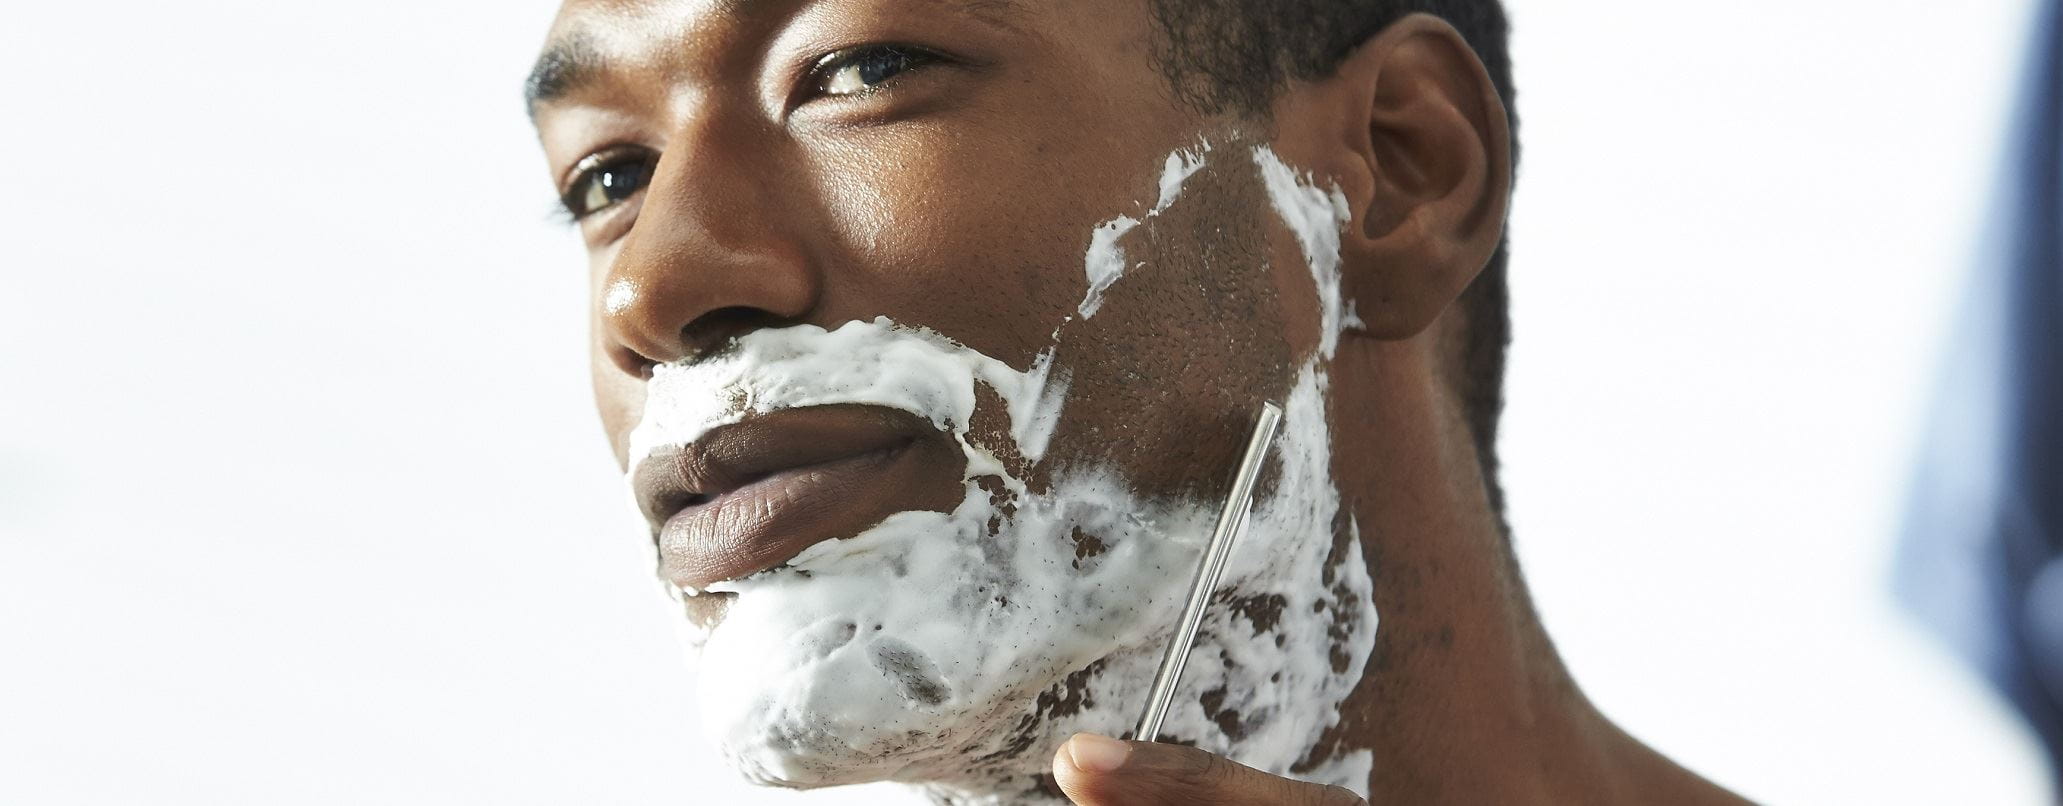 Homem a barbear com espuma